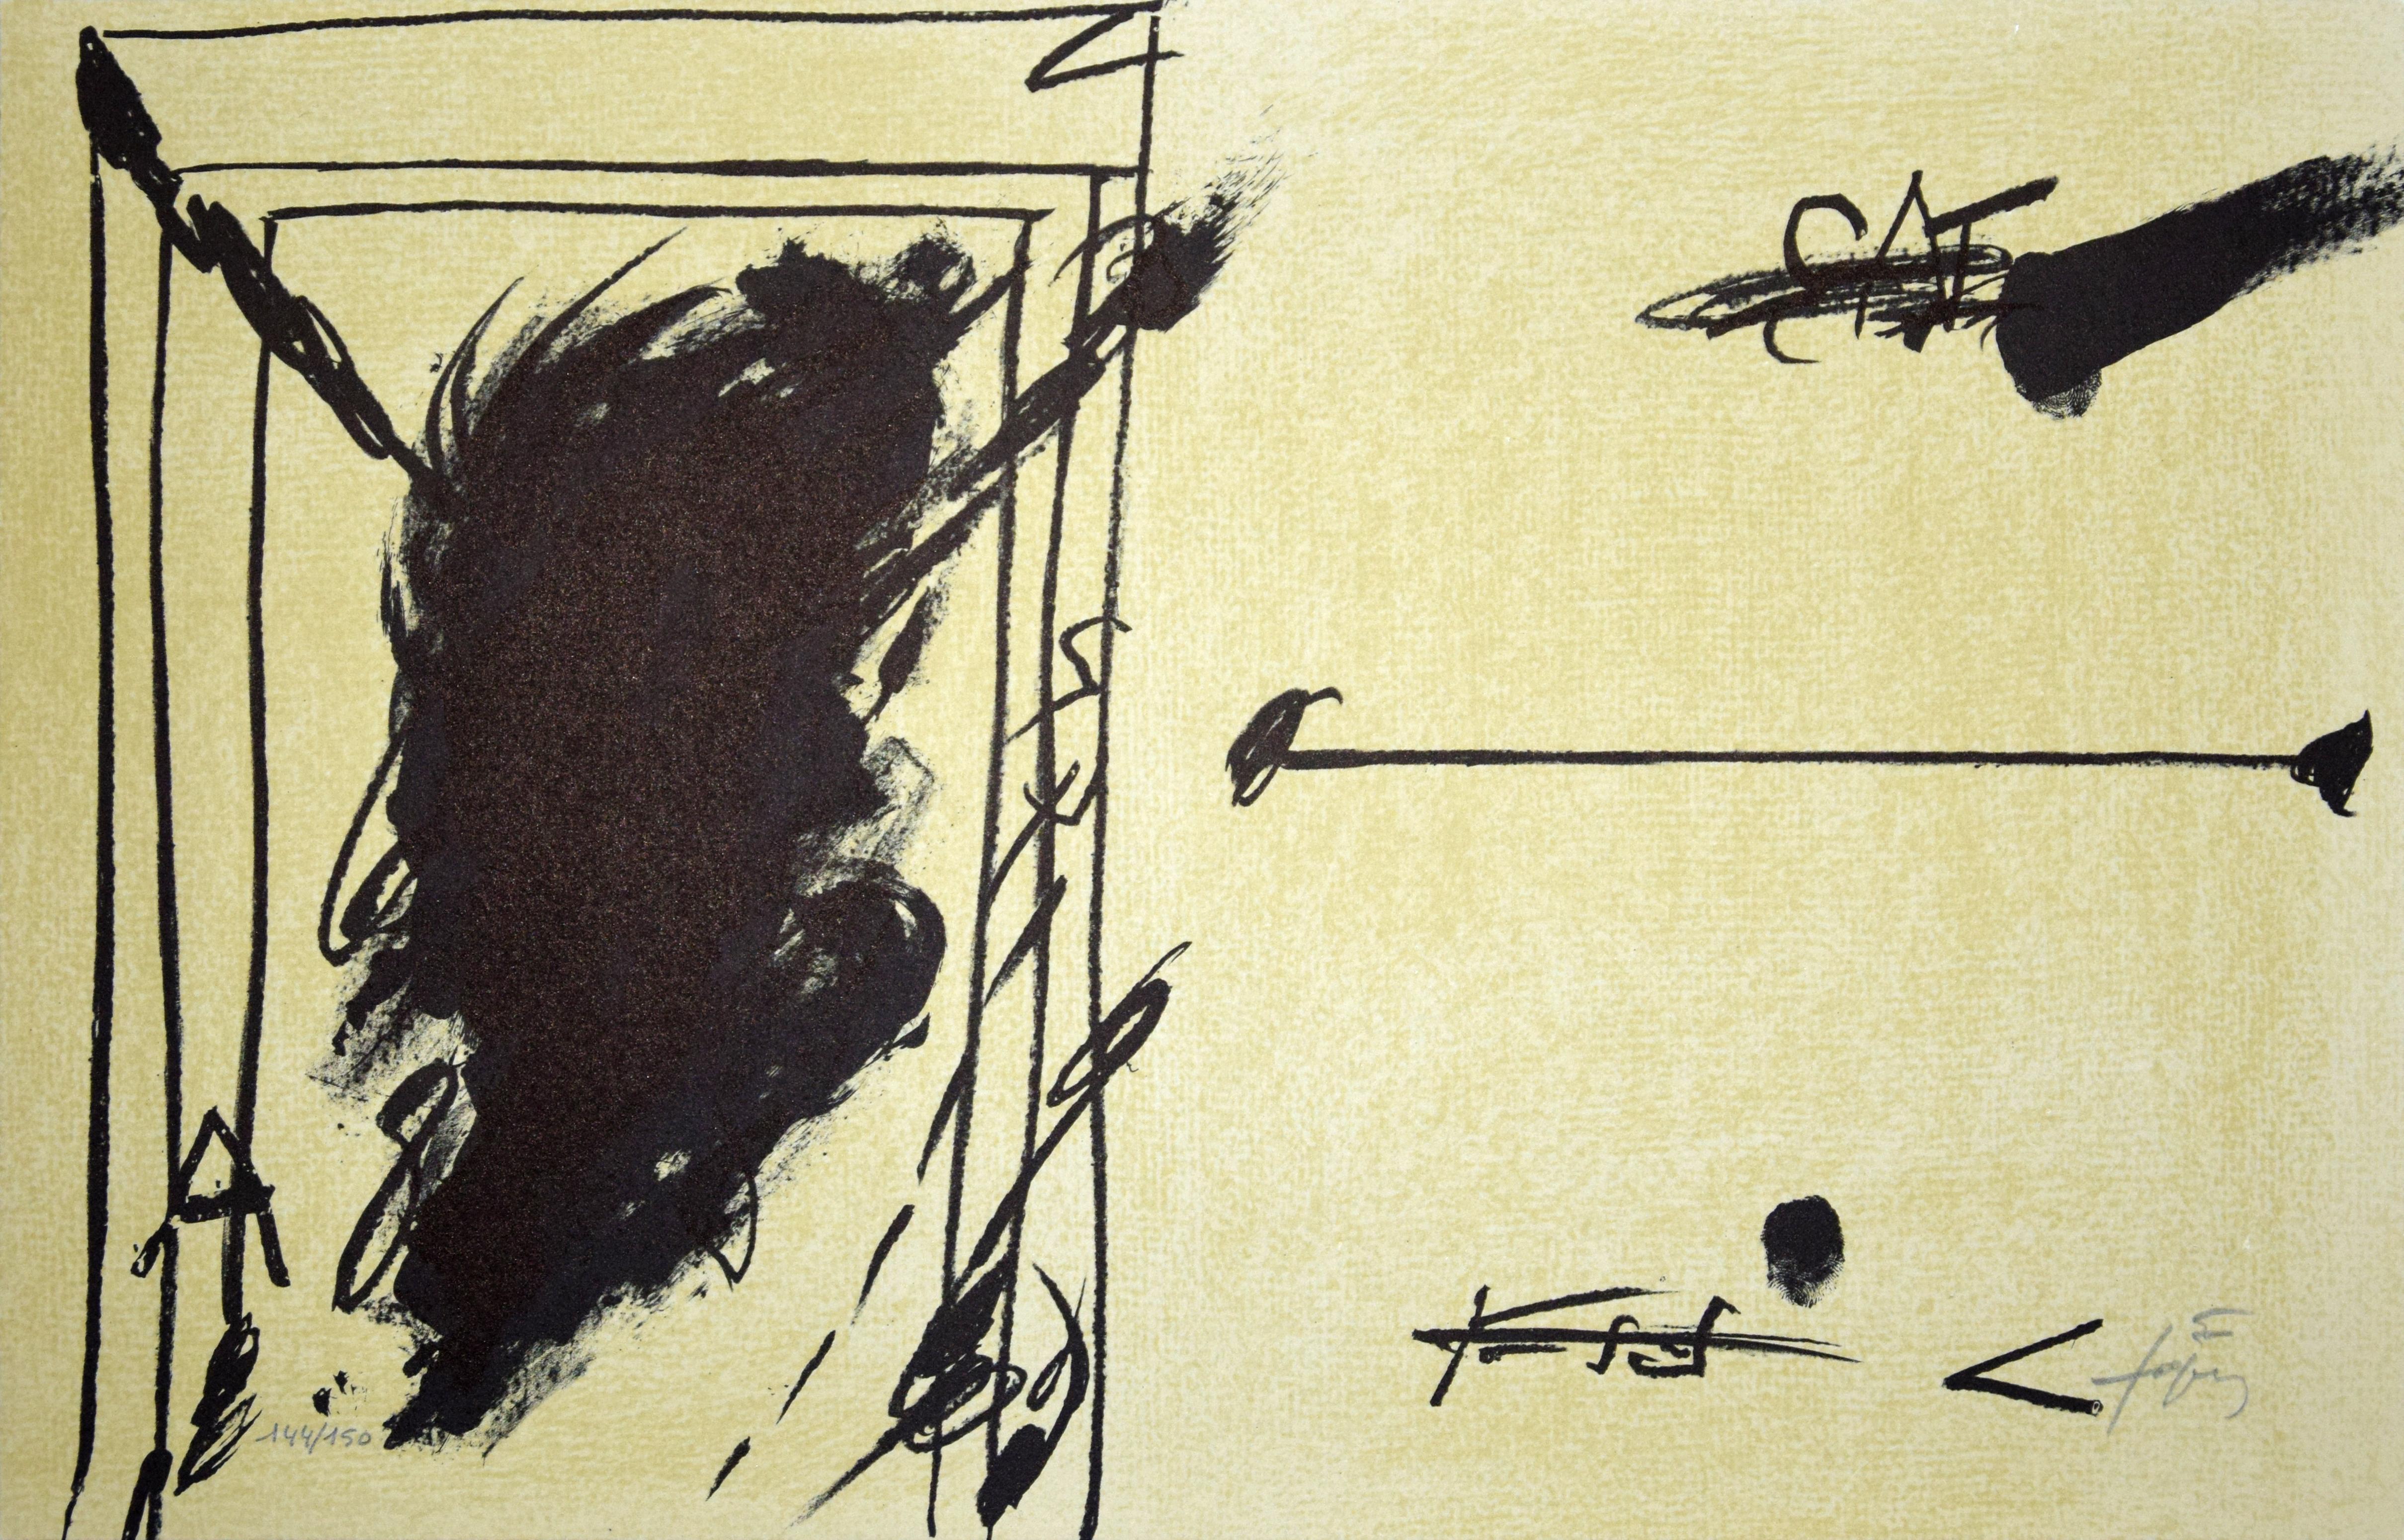 Sans Titre ist eine Original-Lithographie des spanischen Künstlers Antoni Tapies.
Rechts unten mit Bleistift vom Künstler handsigniert. Links unten mit Bleistift nummeriert. Auflage: 150 Stück. Perfekte Bedingungen. 
Das Werk ist eine abstrakte